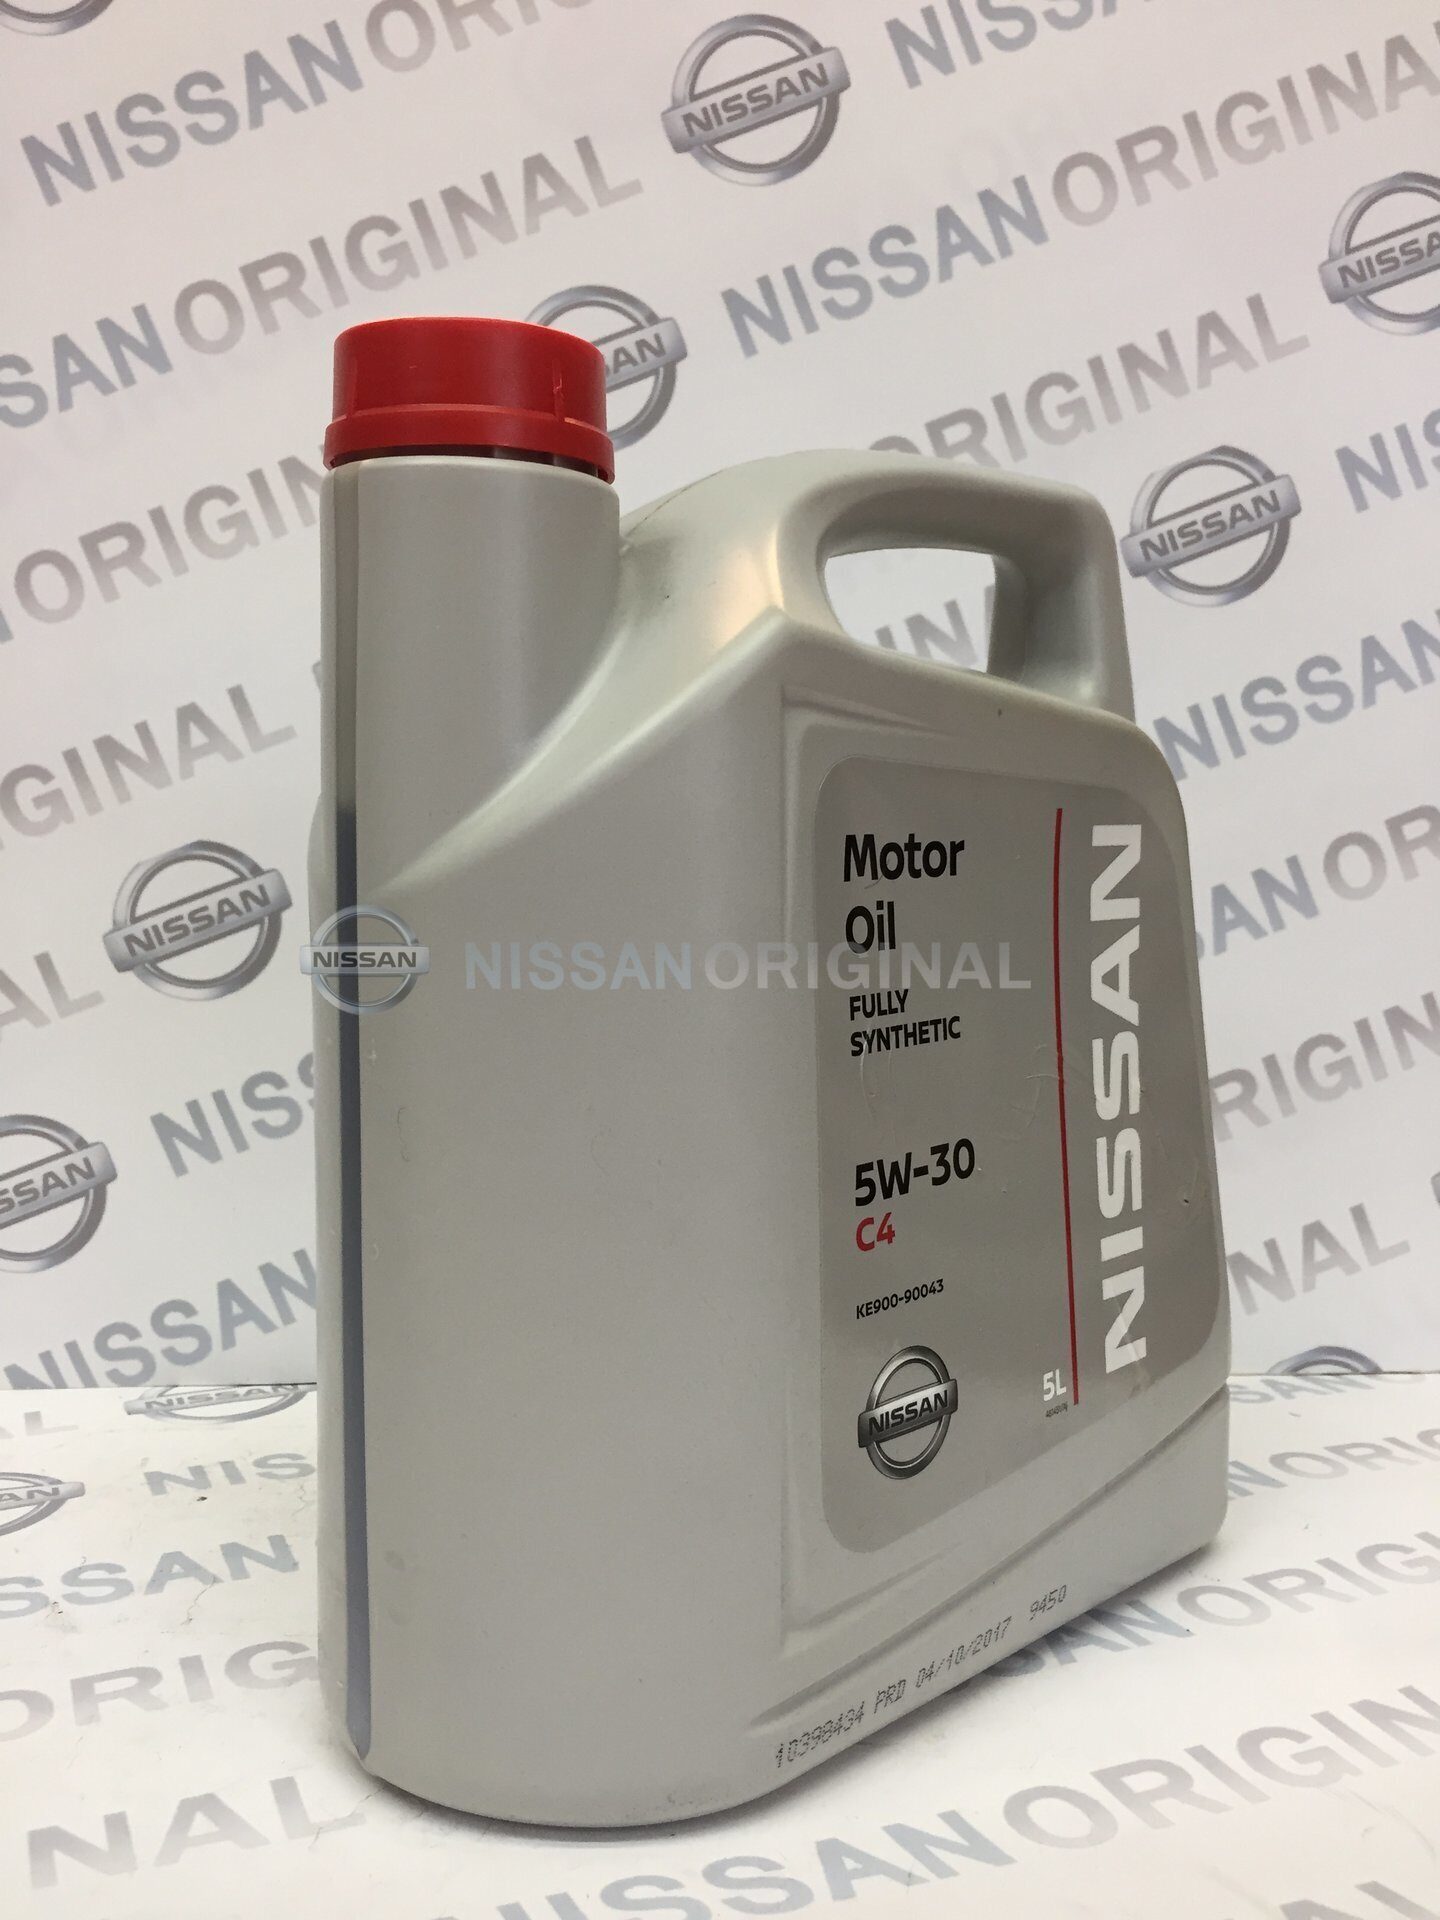 Nissan ke900-91043. Ke900-90040. Оригинальное масло Ниссан это total. Масло Ниссан 5w40 синтетика цена 5 литров.